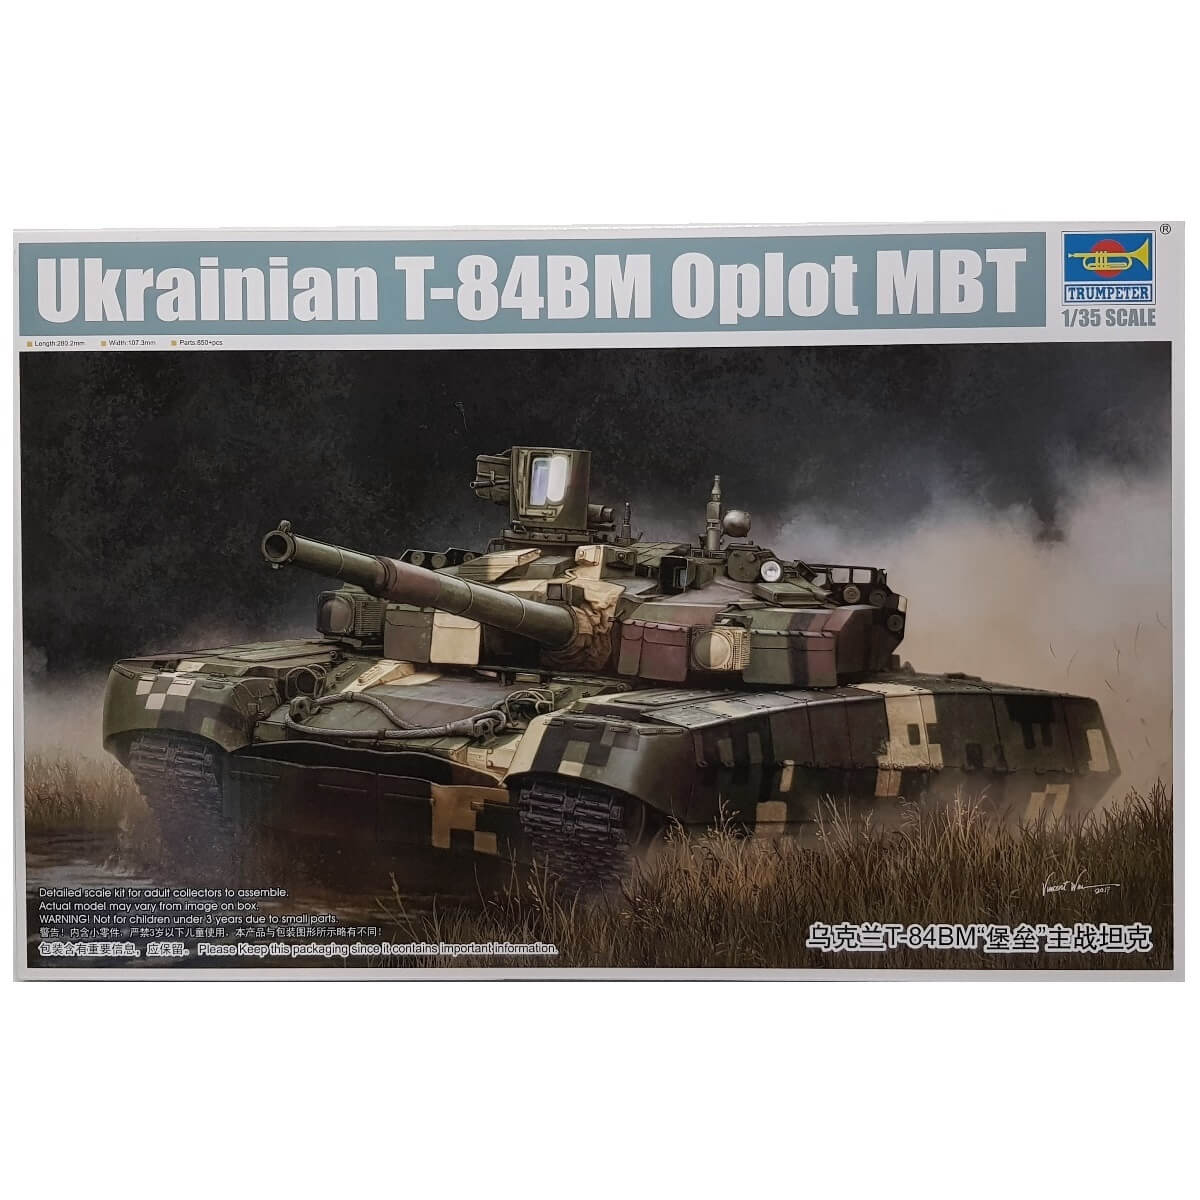 1:35 Ukrainian T-84BM Oplot MBT - TRUMPETER